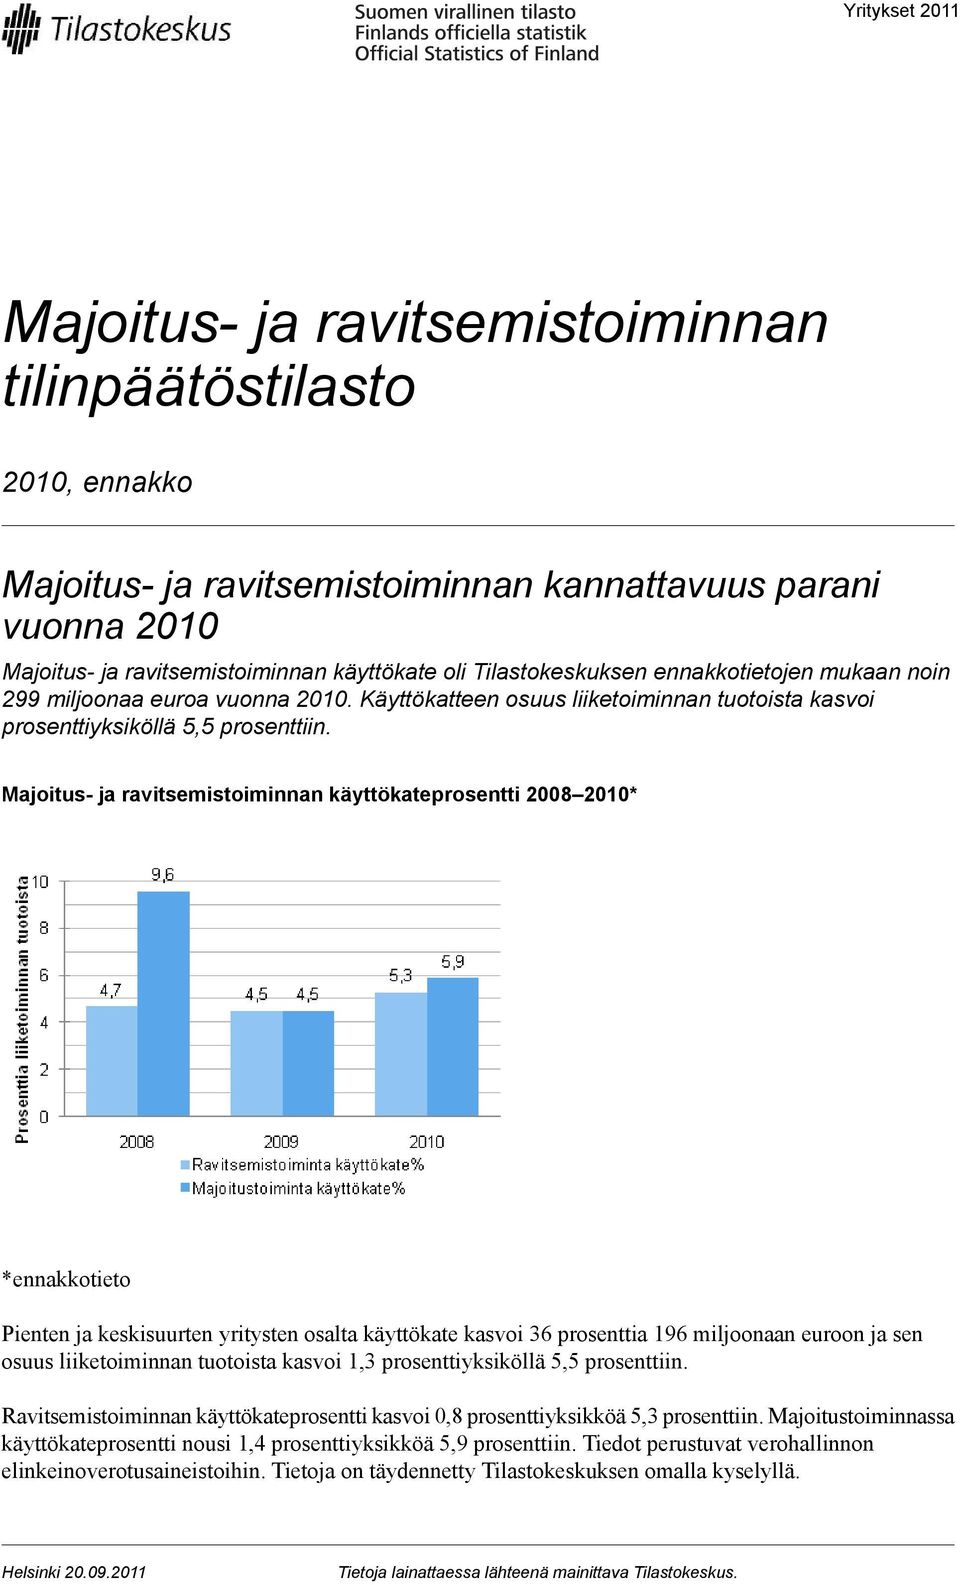 Majoitus- ja ravitsemistoiminnan käyttökateprosentti 2008 2010* *ennakkotieto Pienten ja keskisuurten yritysten osalta käyttökate kasvoi 36 prosenttia 196 miljoonaan euroon ja sen osuus